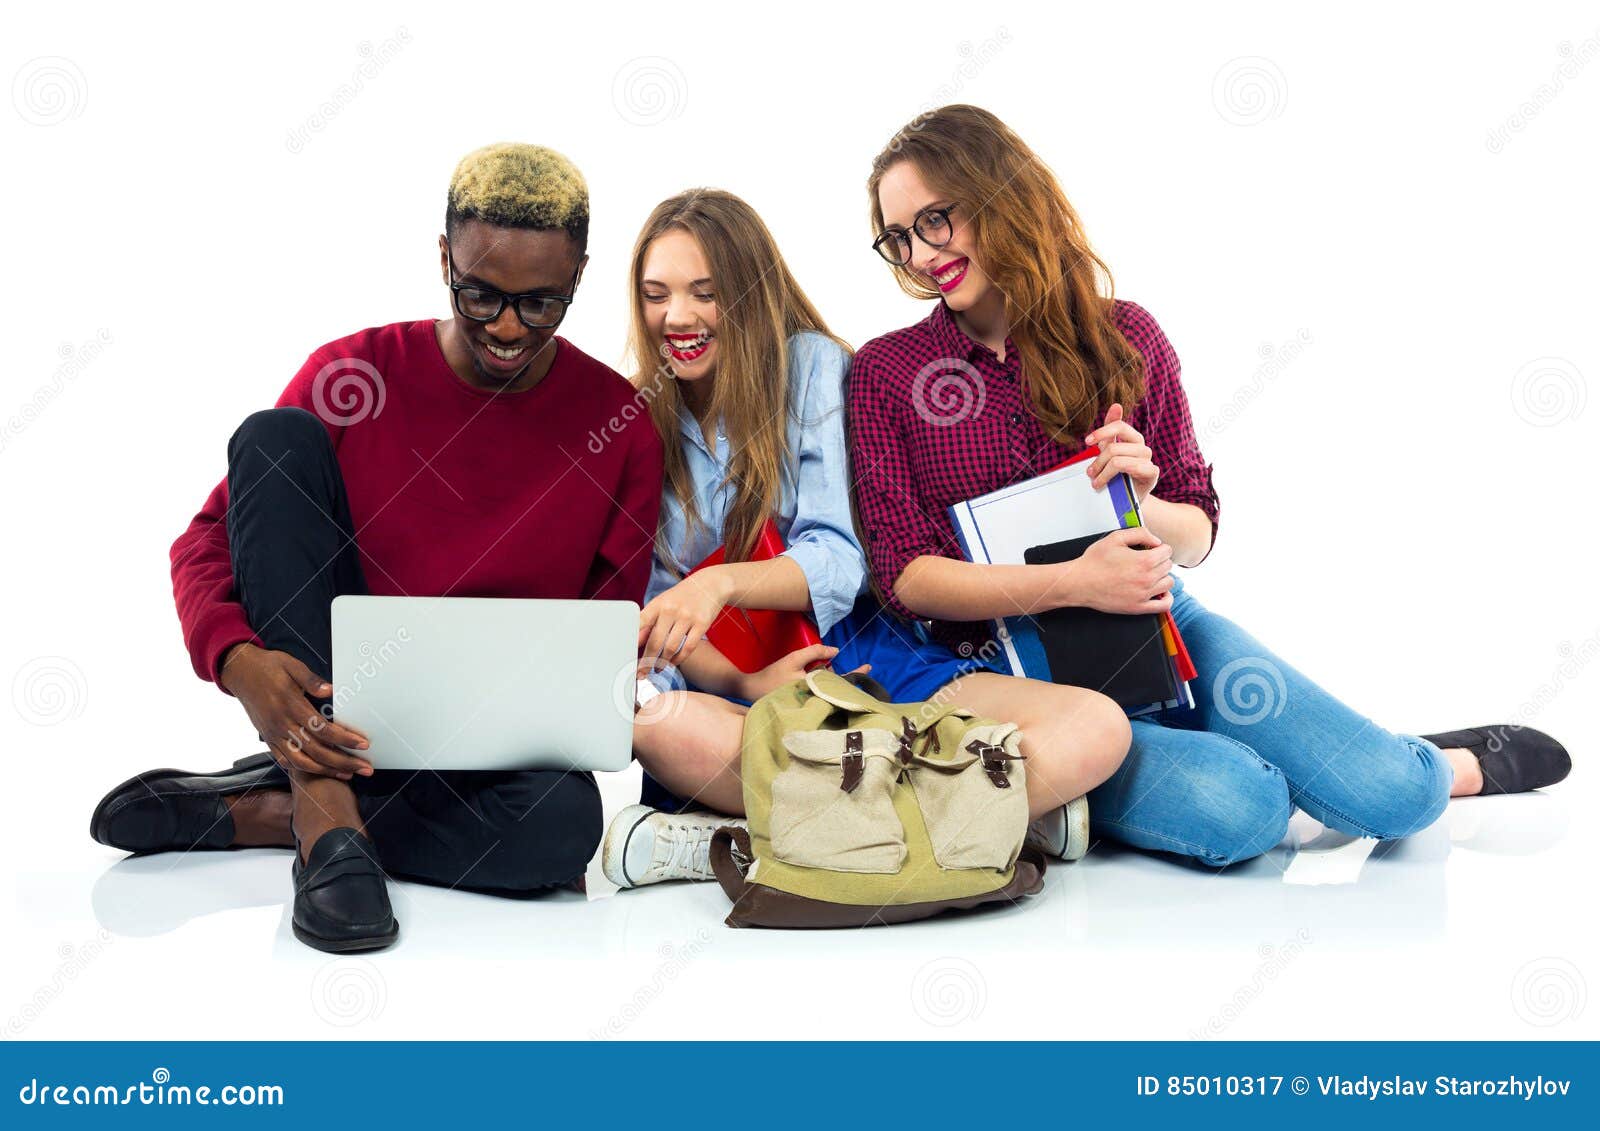 Τρεις ευτυχείς σπουδαστές που κάθονται με τα βιβλία, το lap-top και τις τσάντες